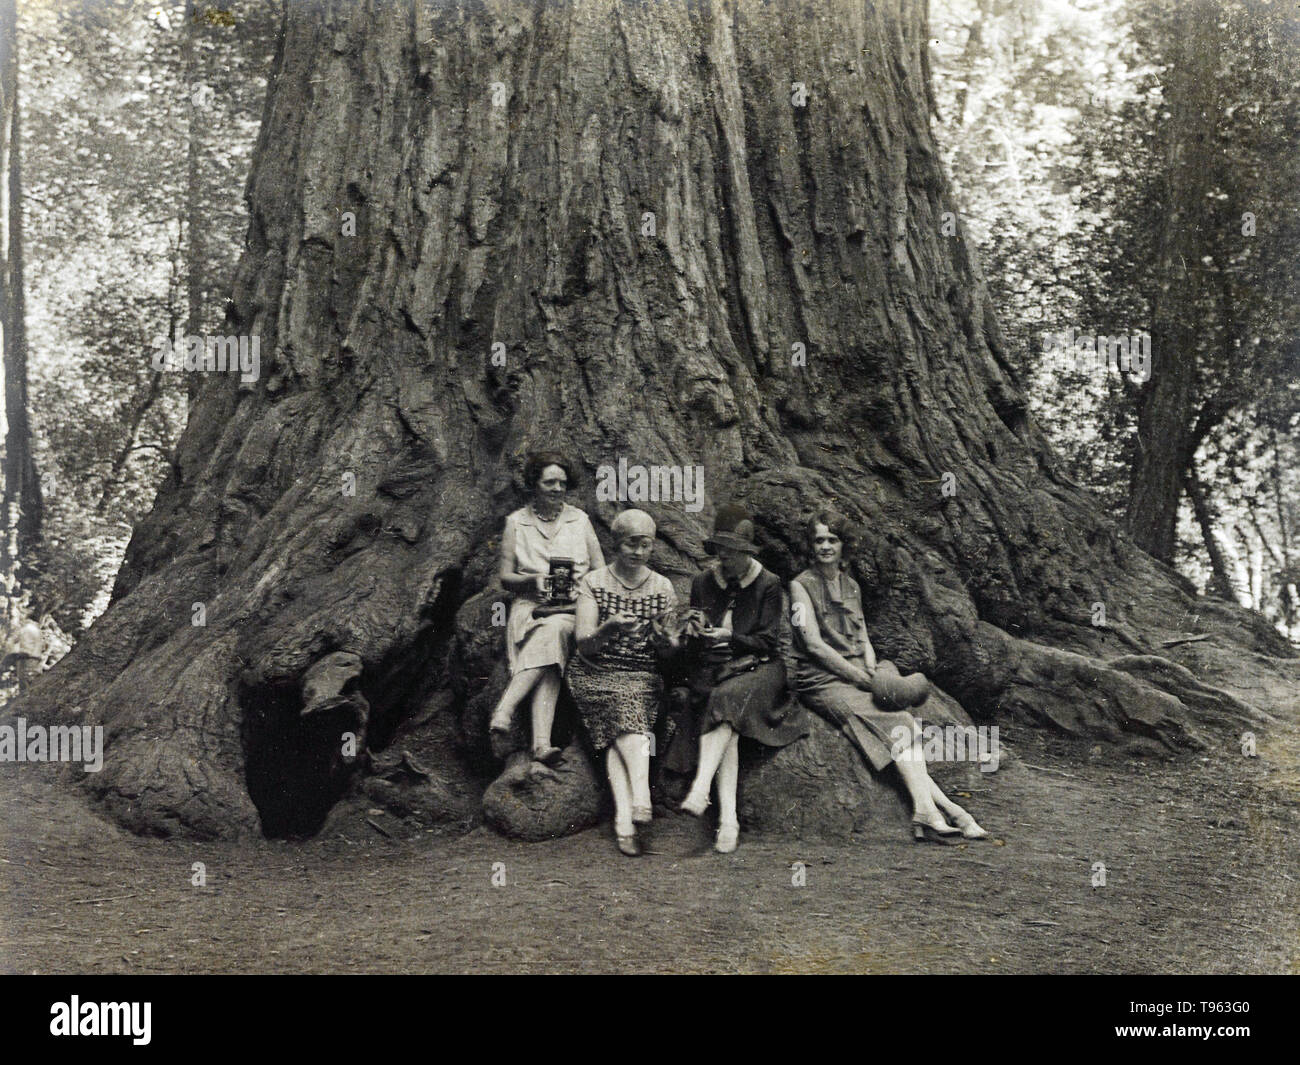 Frauen mit Kameras an der Unterseite eines Sequoia, C. 1920. Louis Fleckenstein (American, 1866-1943). Silbergelatineabzug. Stockfoto